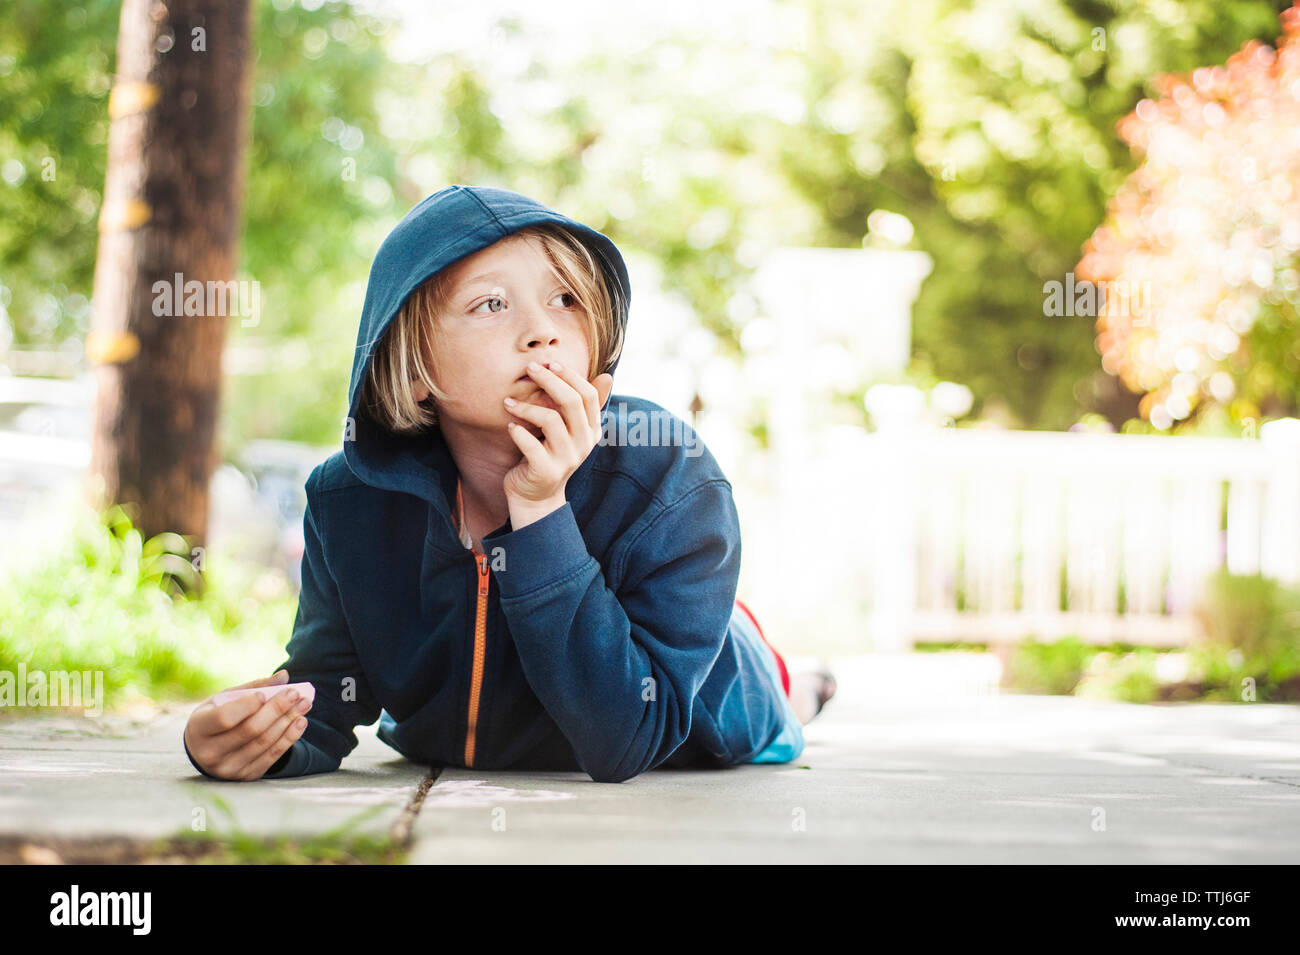 Niño sosteniendo chalk tumbado en la acera Foto de stock